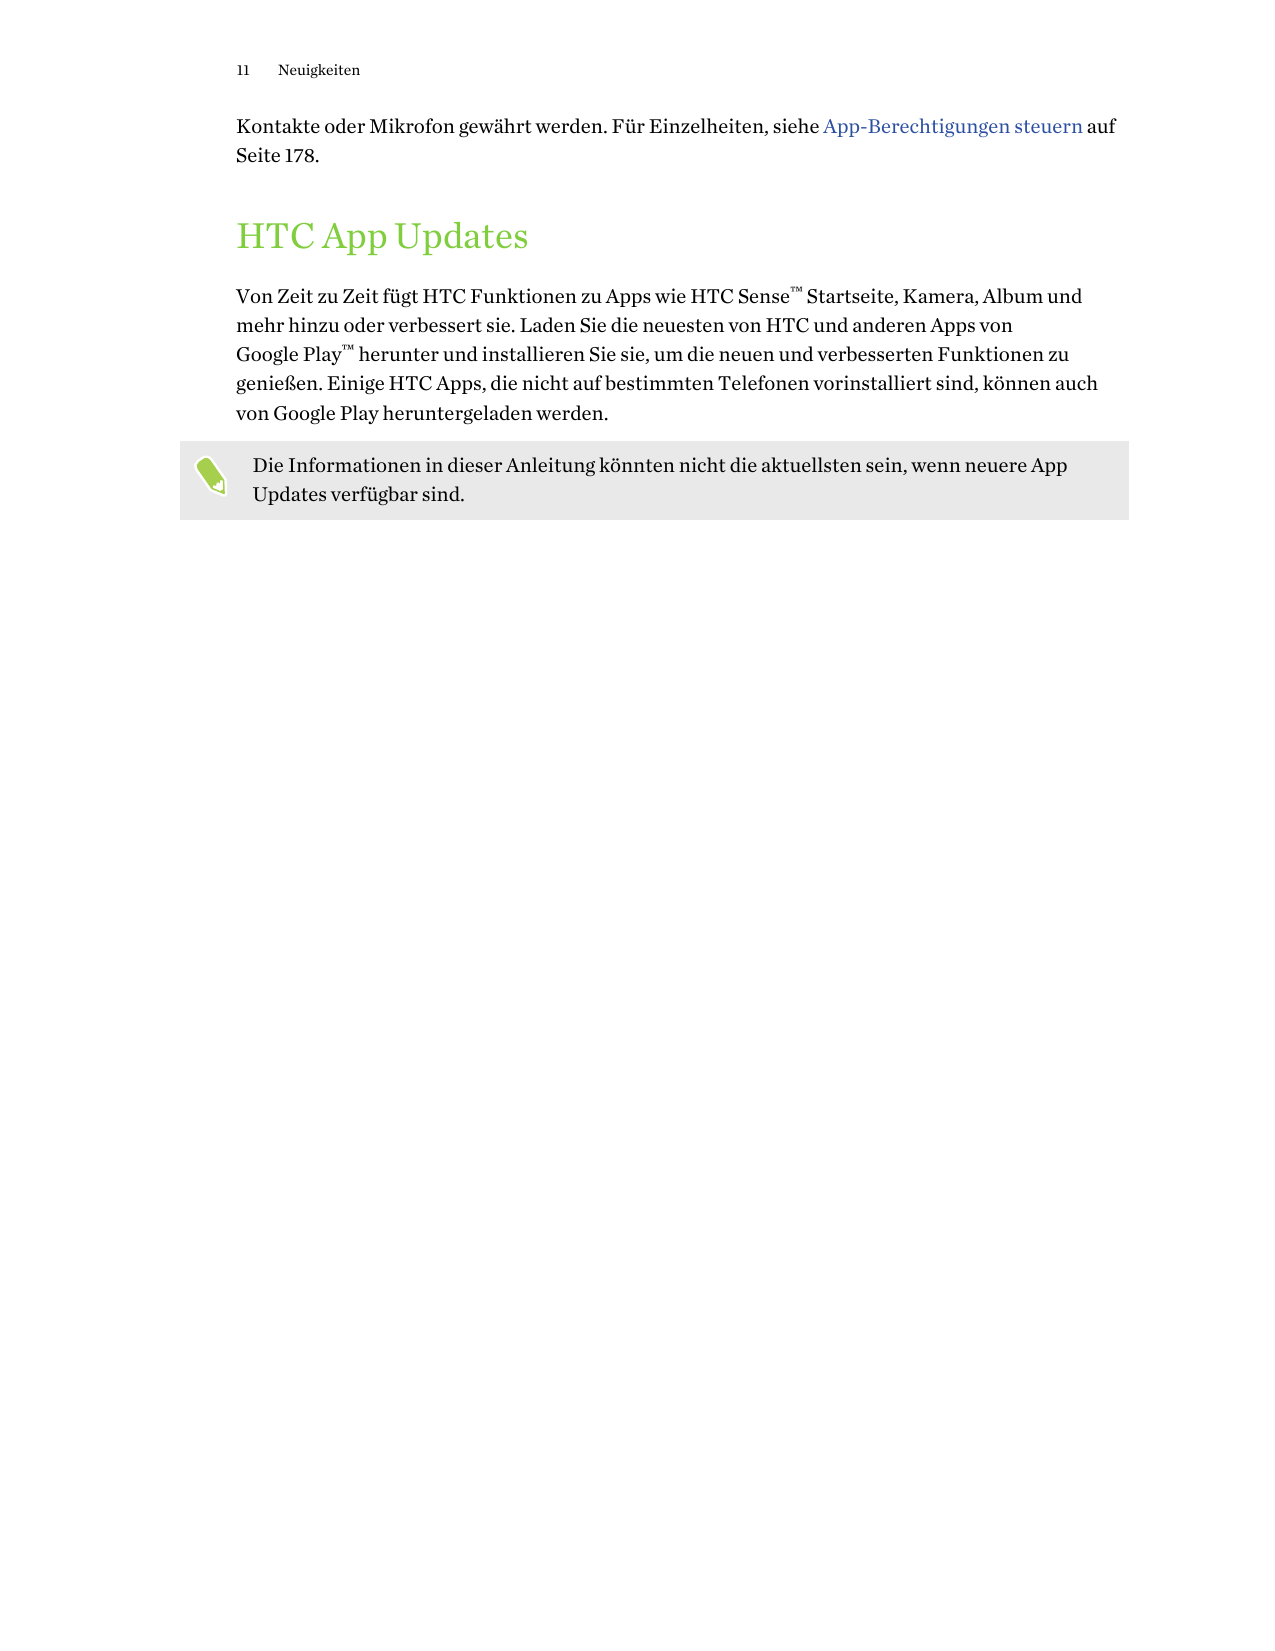 11NeuigkeitenKontakte oder Mikrofon gewährt werden. Für Einzelheiten, siehe App-Berechtigungen steuern aufSeite 178.HTC App Upda